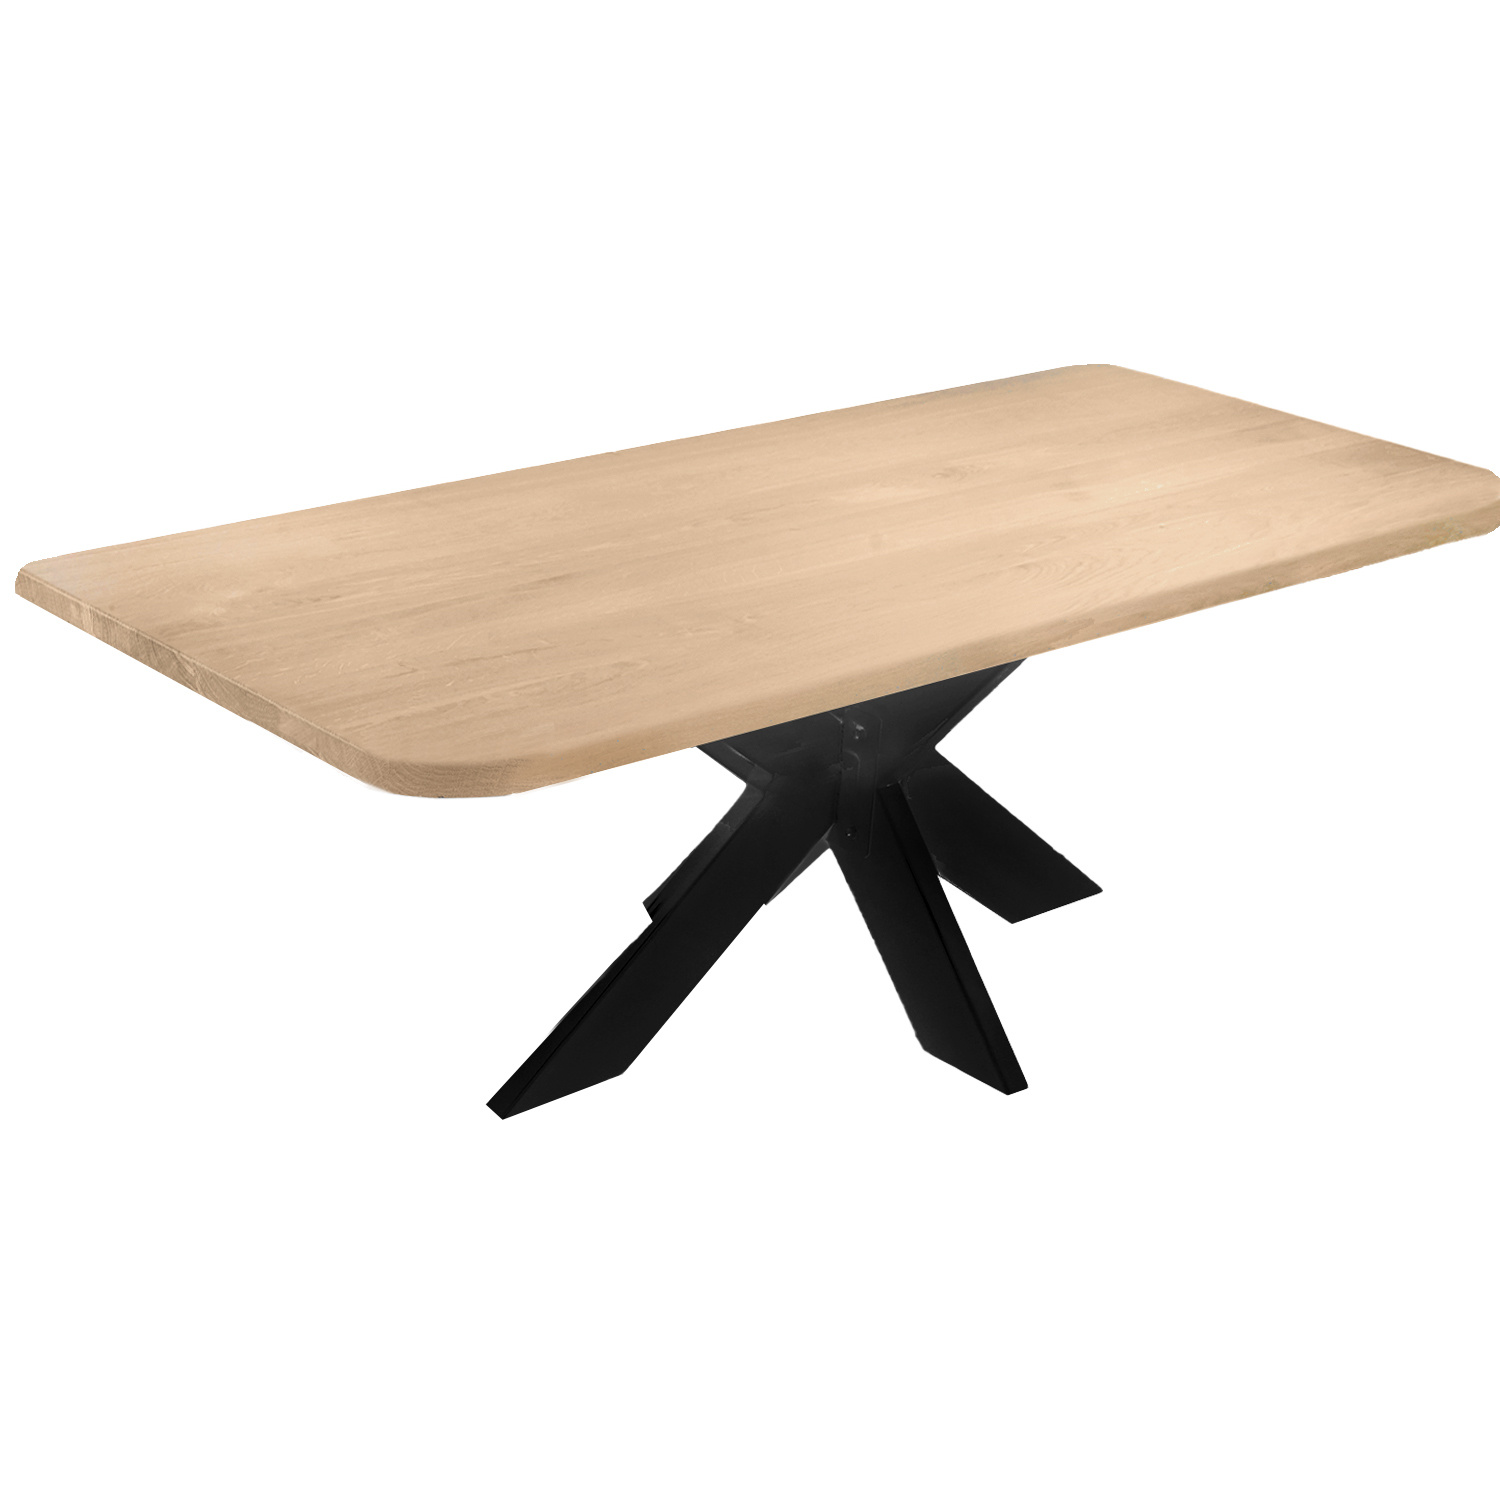  Tischplatte Eiche - mit runden Ecken - nach Maß - 4 cm dick (1-Schicht) - Breite Lamellen (10 - 12 cm breit) - Eichenholz A-Qualität - verleimt & künstlich getrocknet (HF 8-12%) - mit abgerundeten Kanten - 50-120x50-248 cm